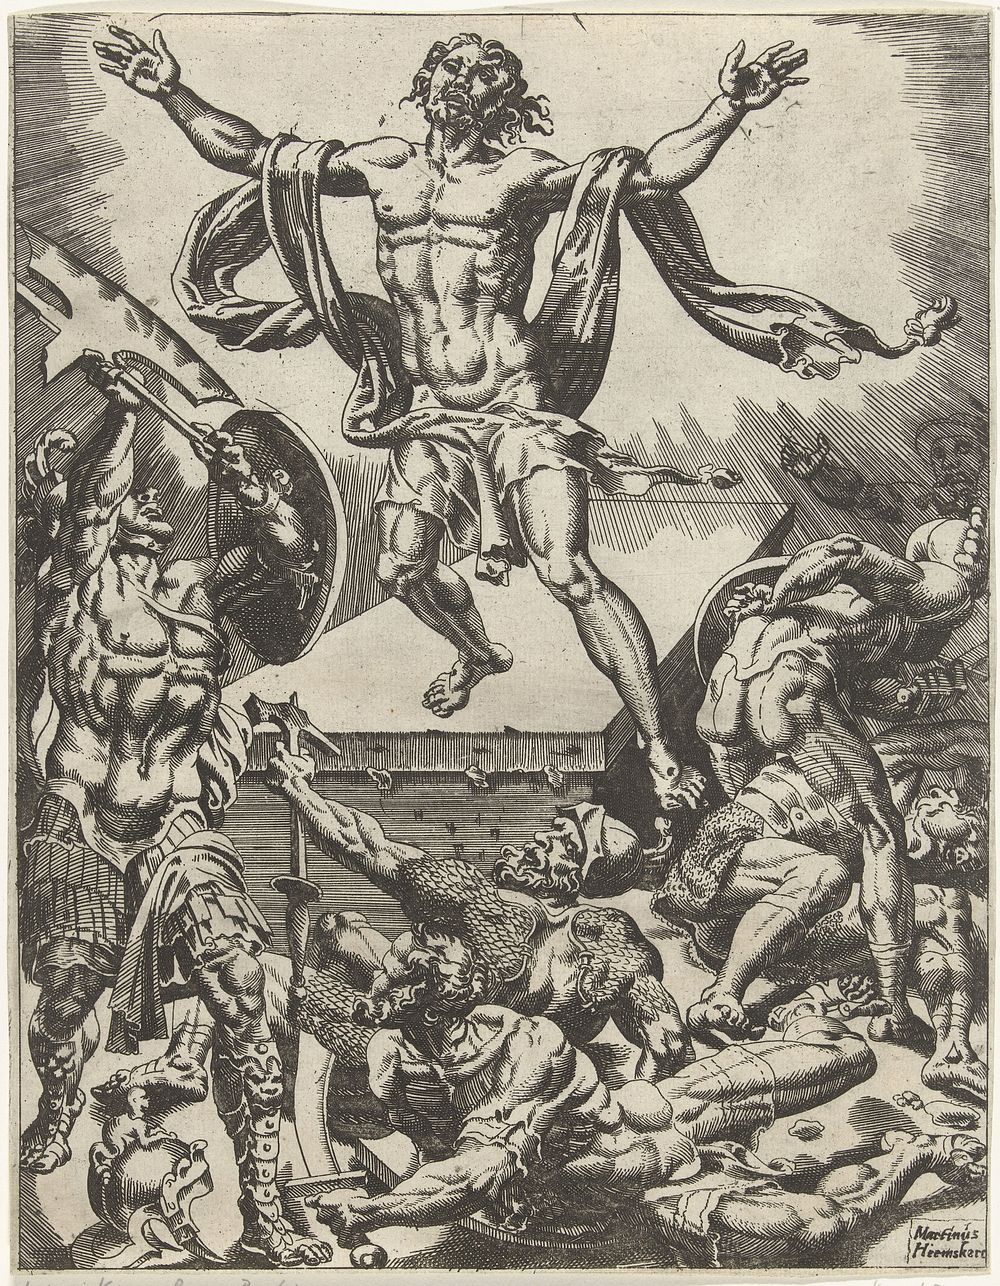 Wederopstanding van Christus (1548) by Dirck Volckertsz Coornhert and Maarten van Heemskerck